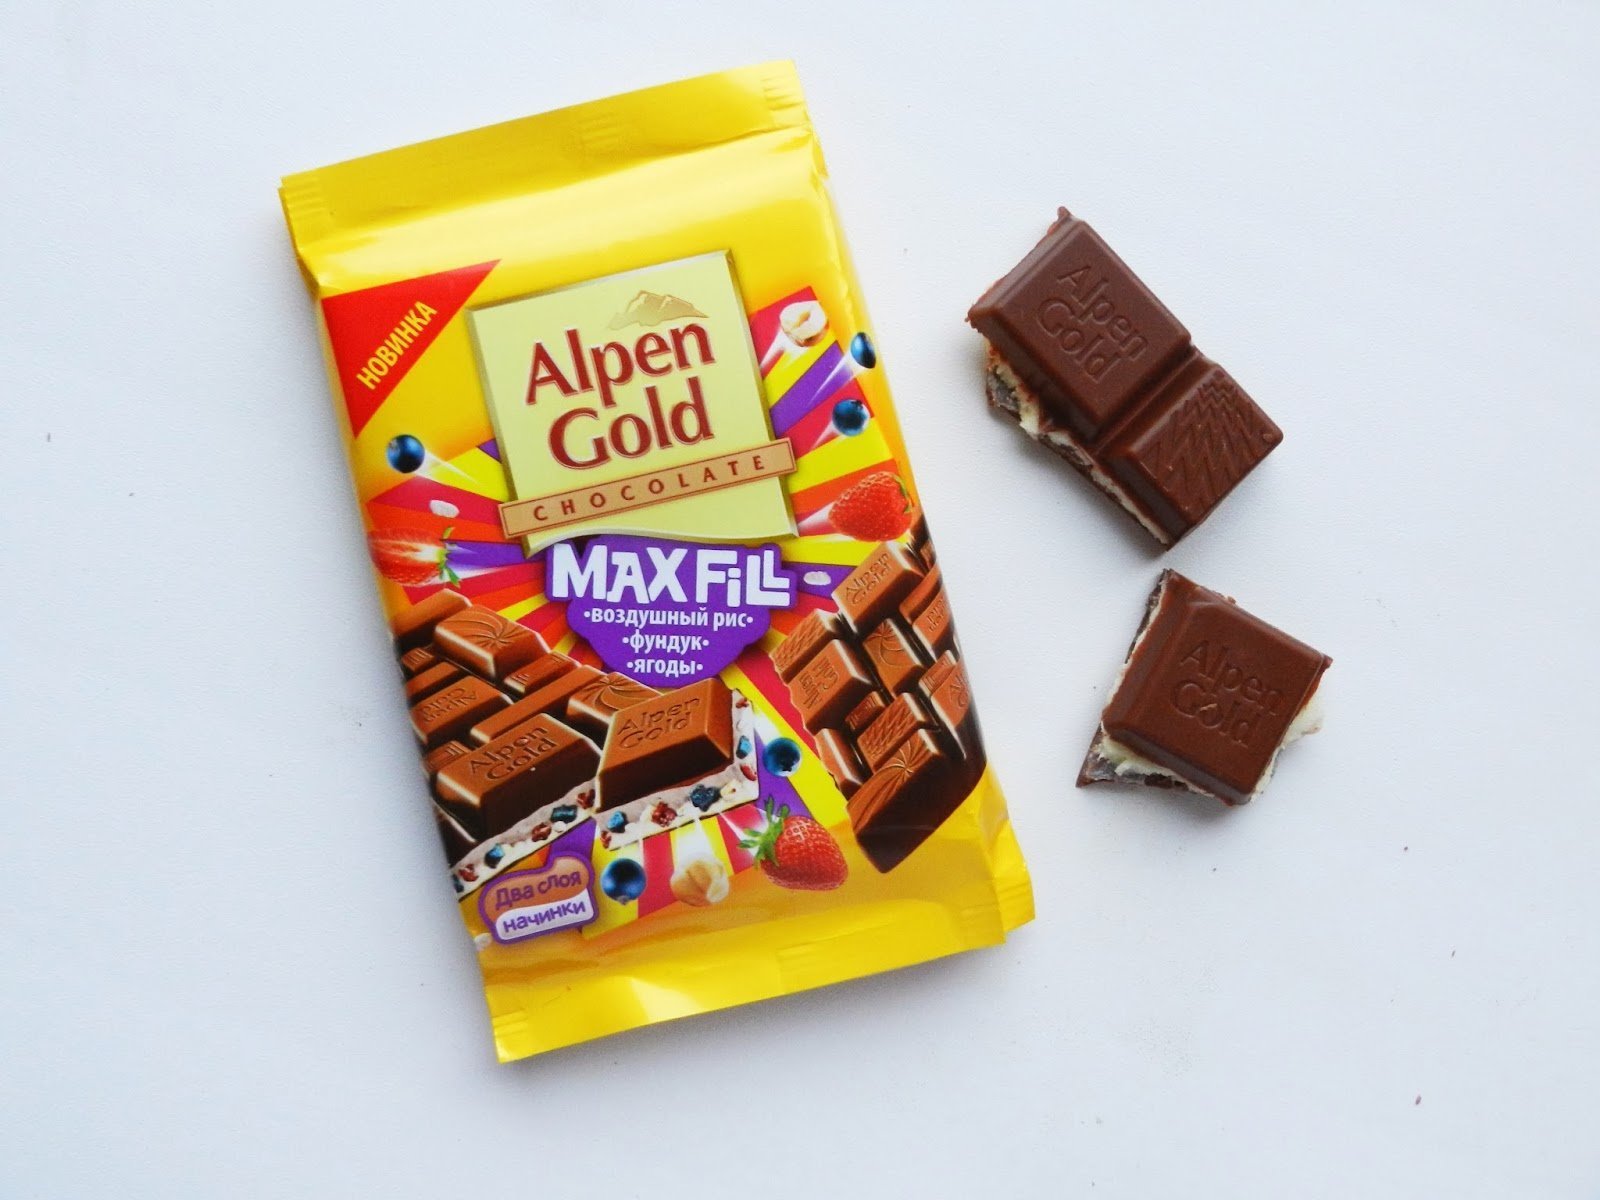 Анпенгольд шоколад. Плитка шоколада Альпен Гольд. Шоколад Альпен Гольд. Шоколад Alpen Gold Max fill. Клубничный шоколад Альпен Гольд.